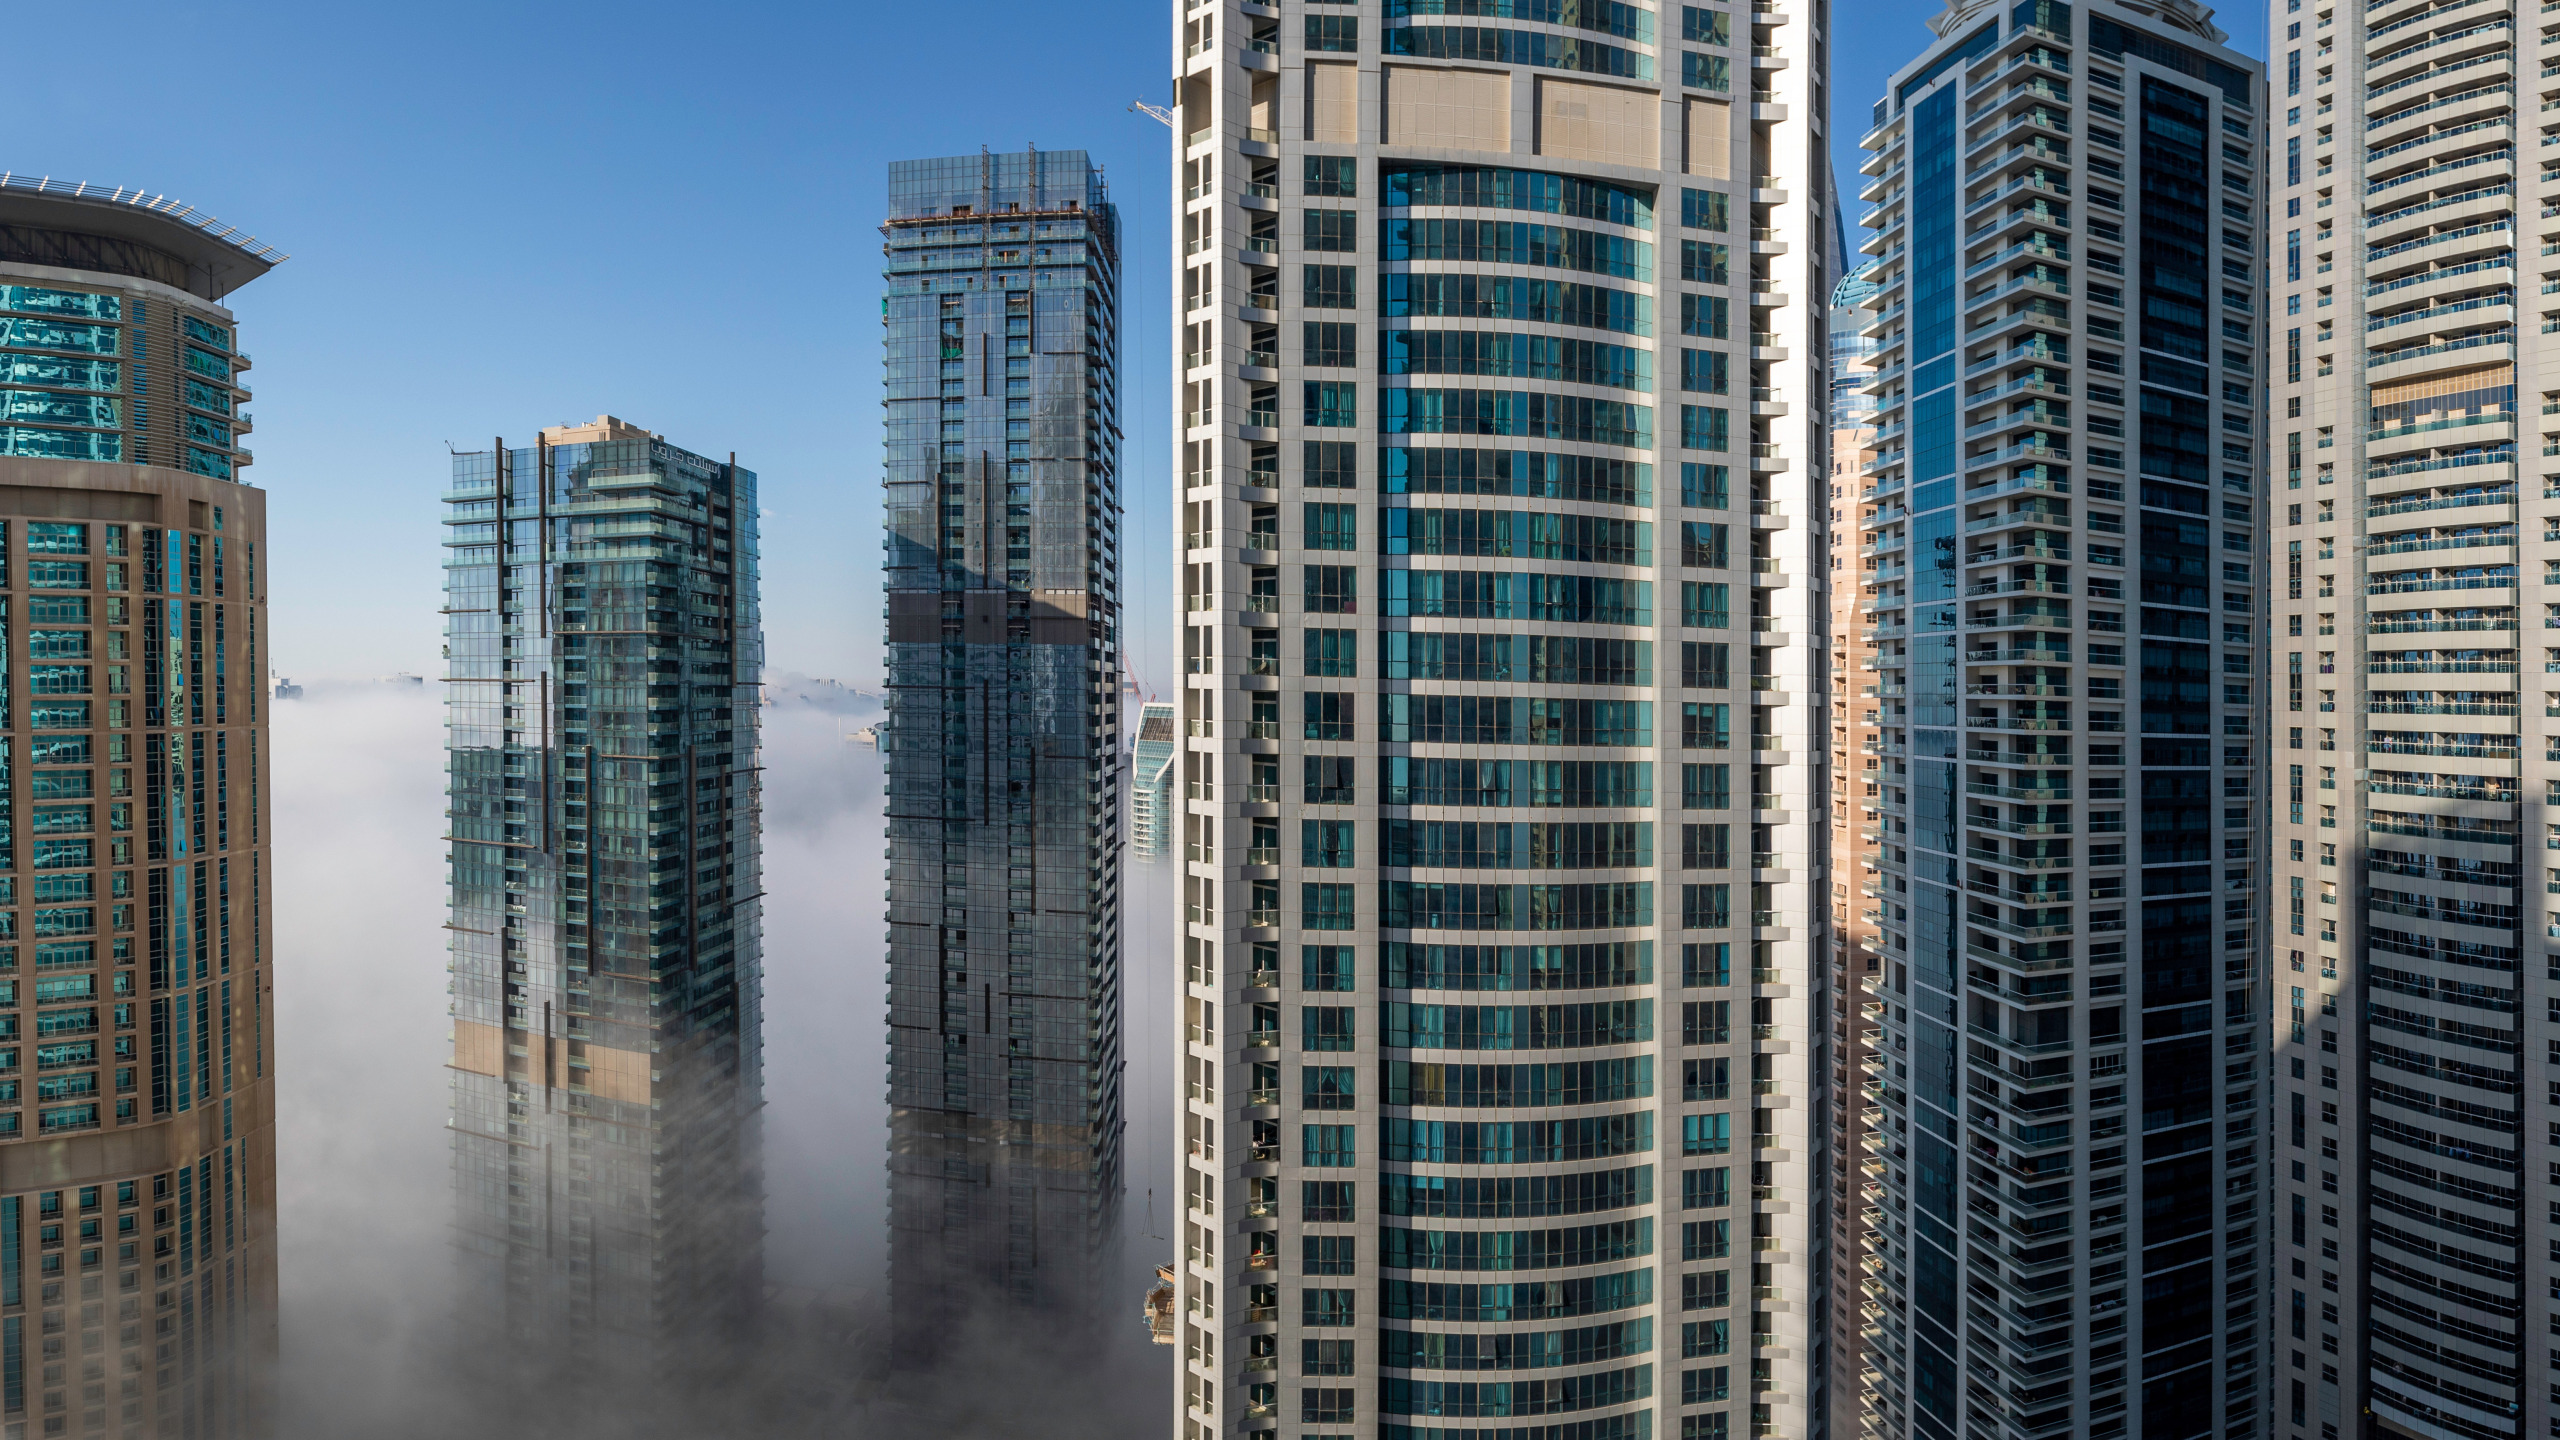 Список зданий города. ГК Дубай высотки. Mirax Dubai небоскреб. 51 Этаж Дубай высотки. Многоэтажный дом в Дубае.